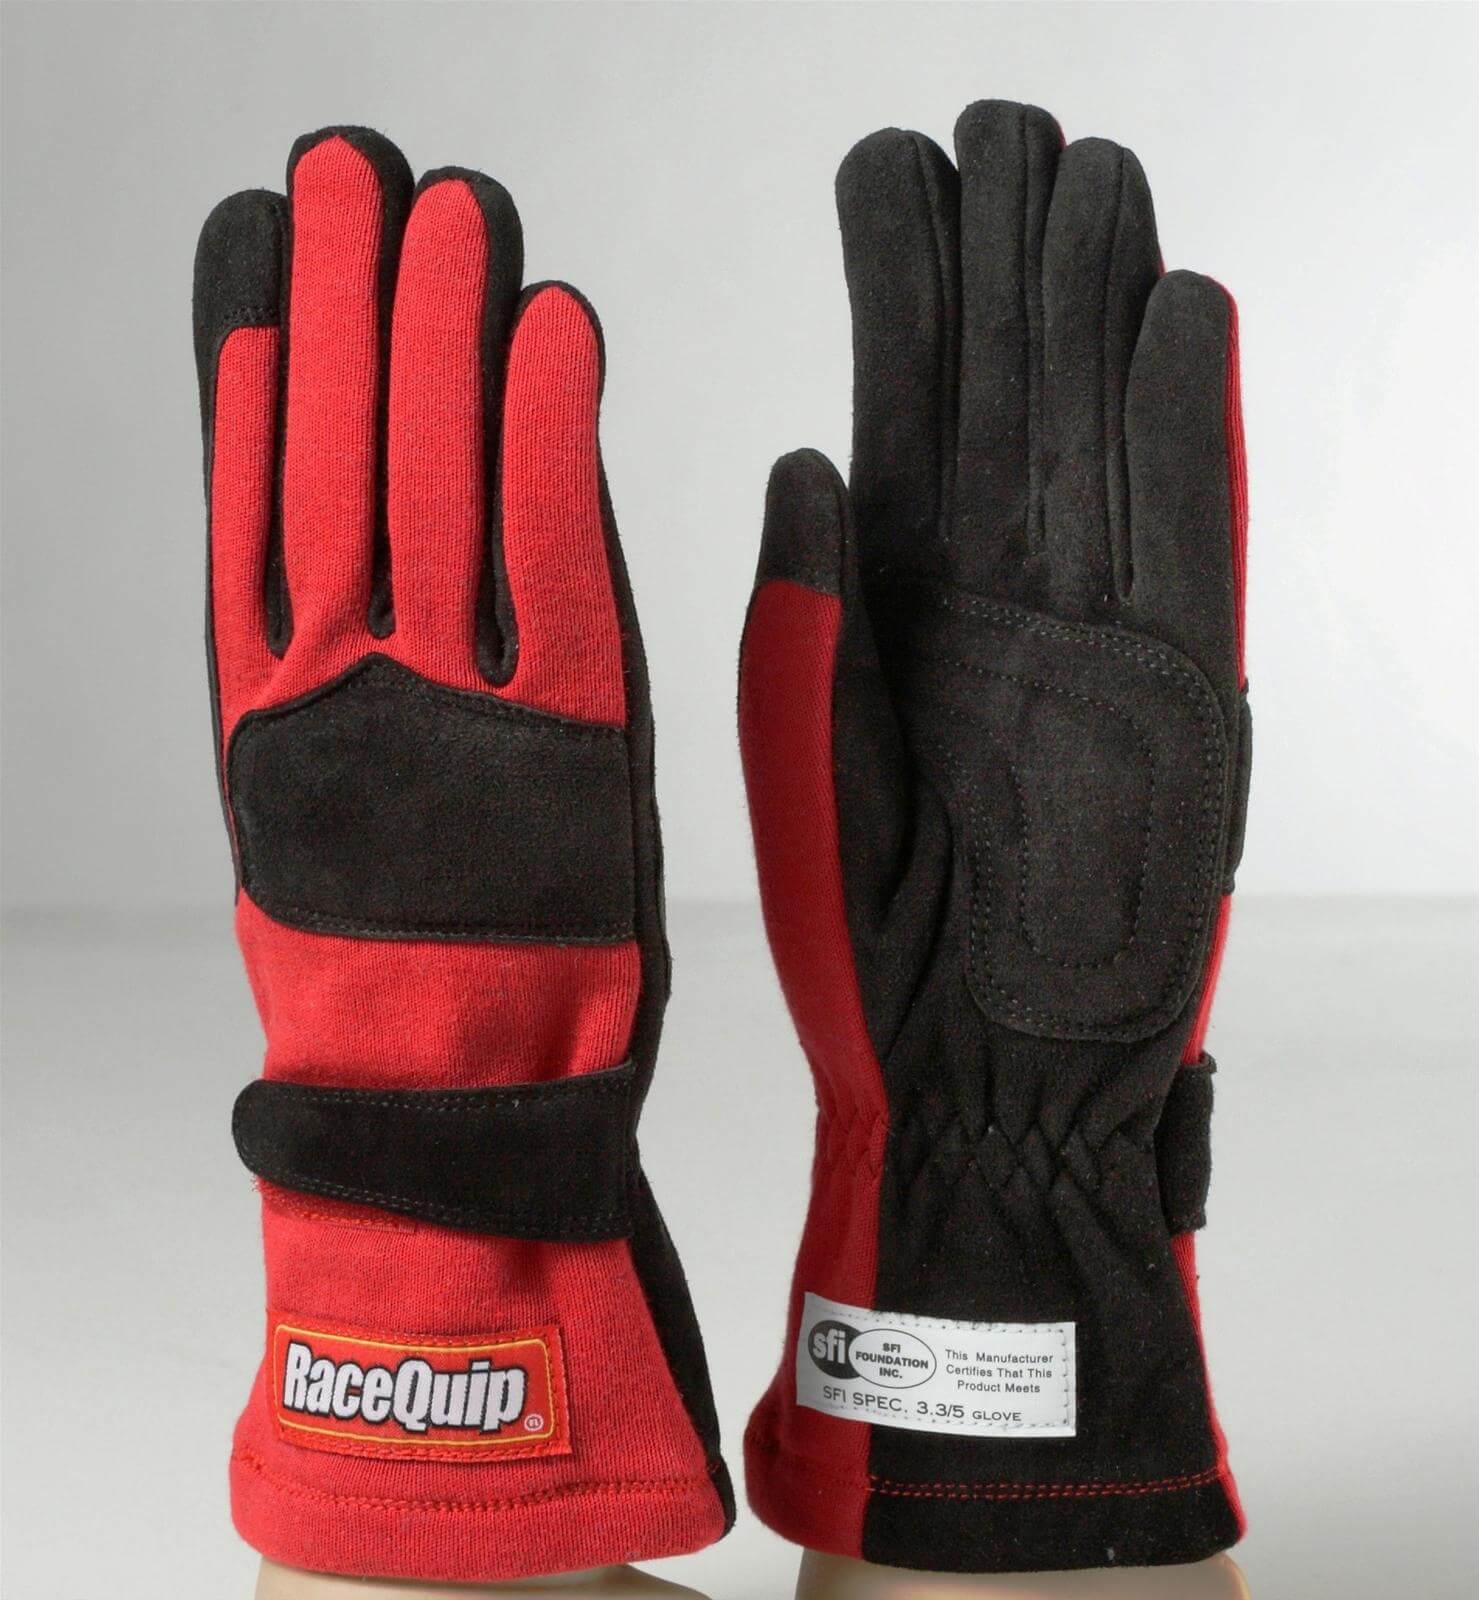 355 Gloves - $61.95